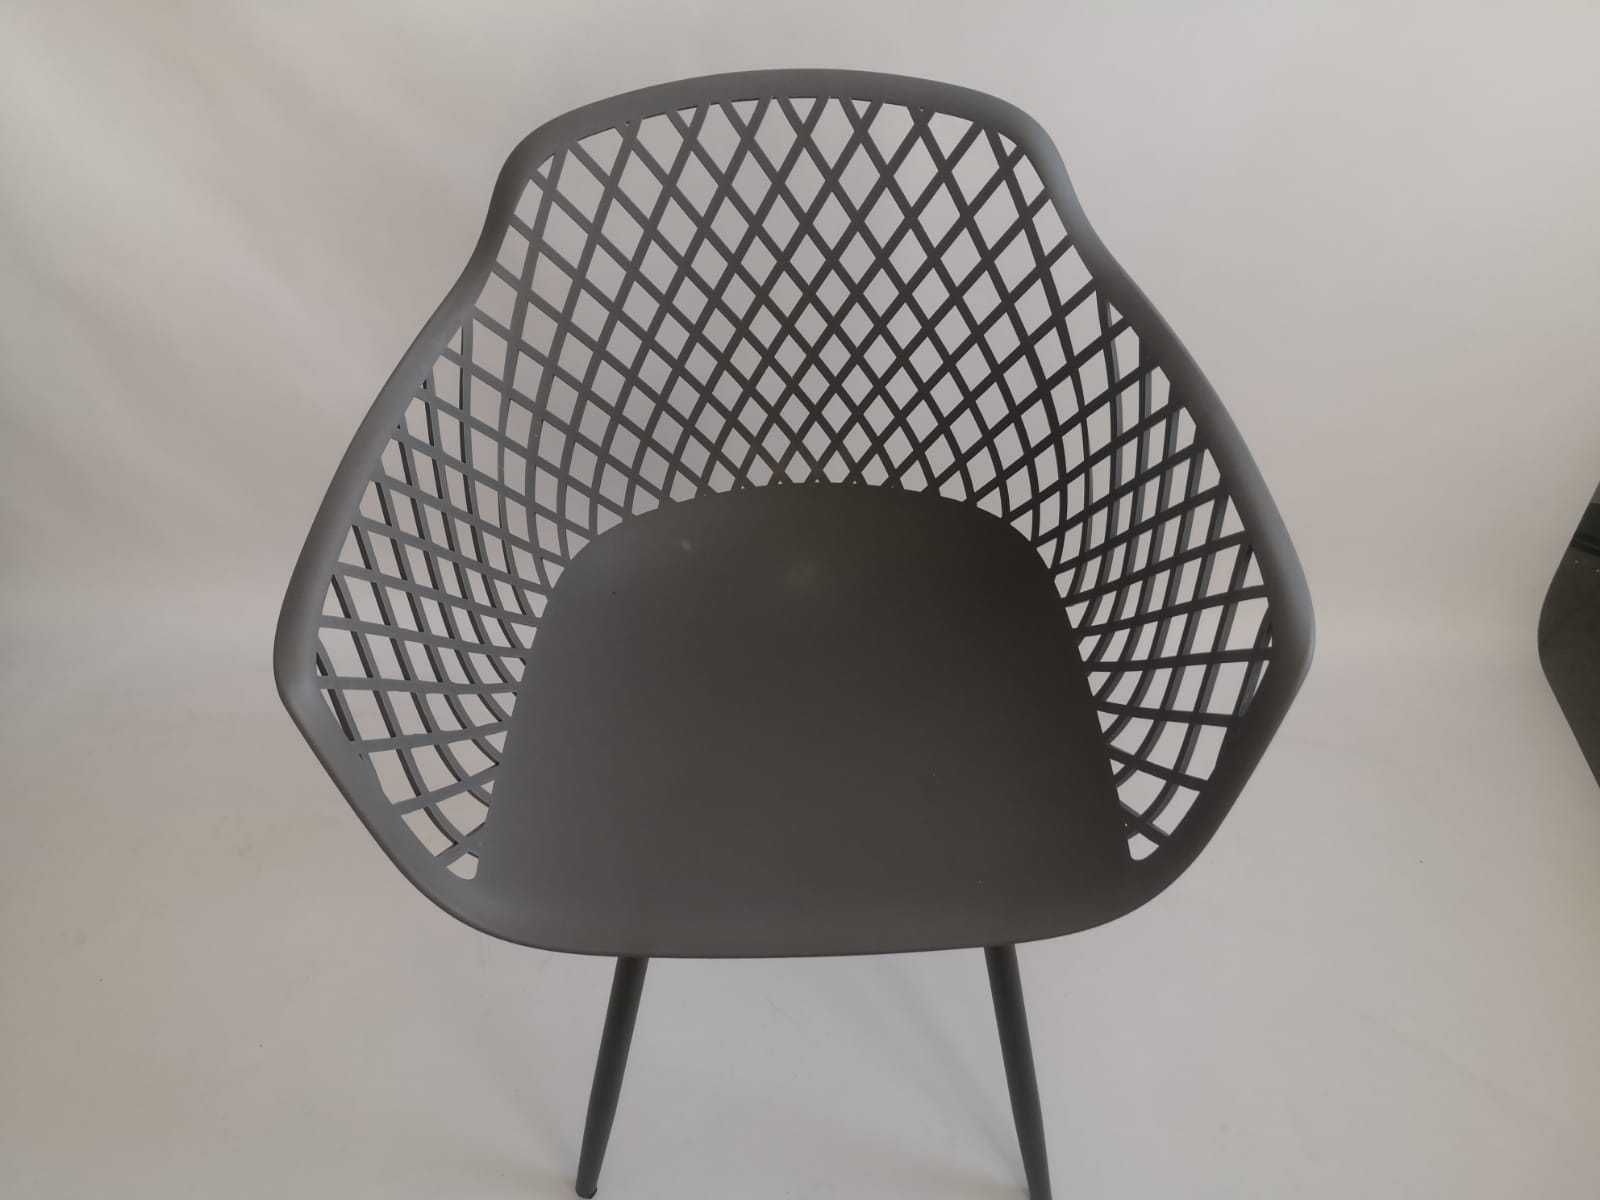 Krzesła ogrodowe zestaw 2 szt ażurowe szare krzesło